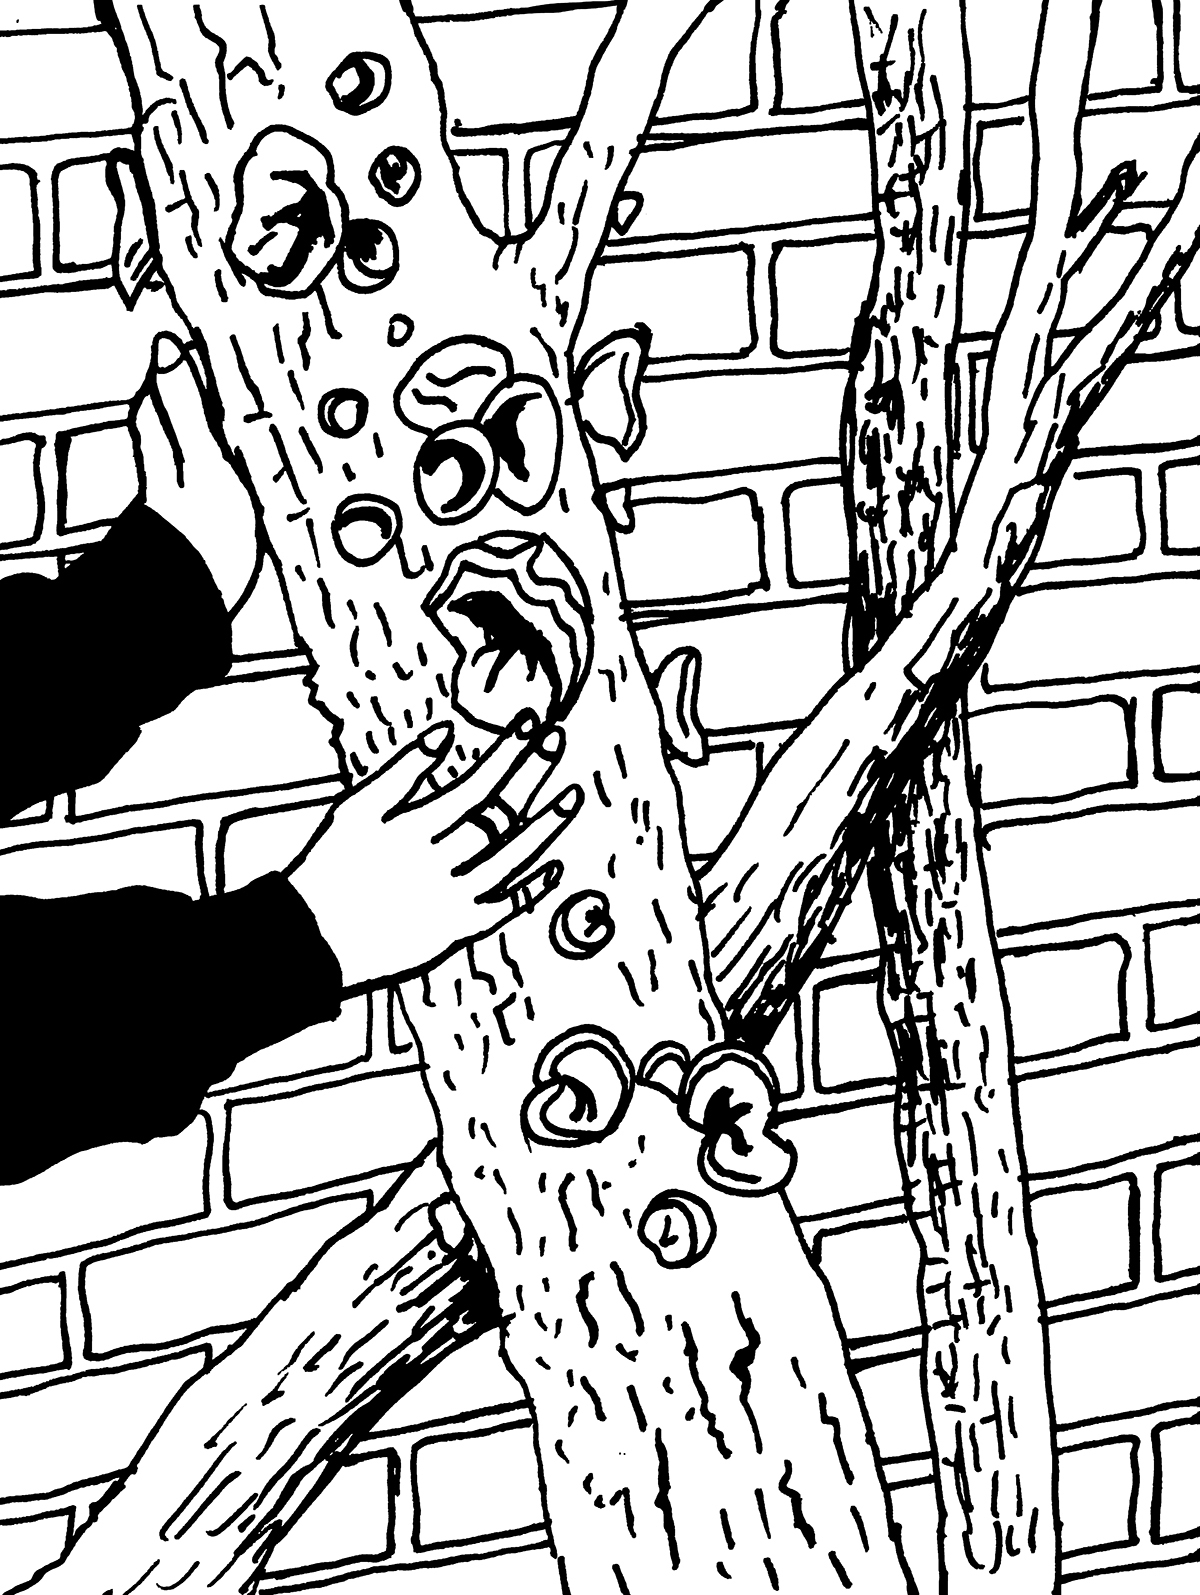 Ludzkie ręce dotykają dnia drzewa, na którym rosną grzyby – uszaki. W tle ceglana ściana budynku.